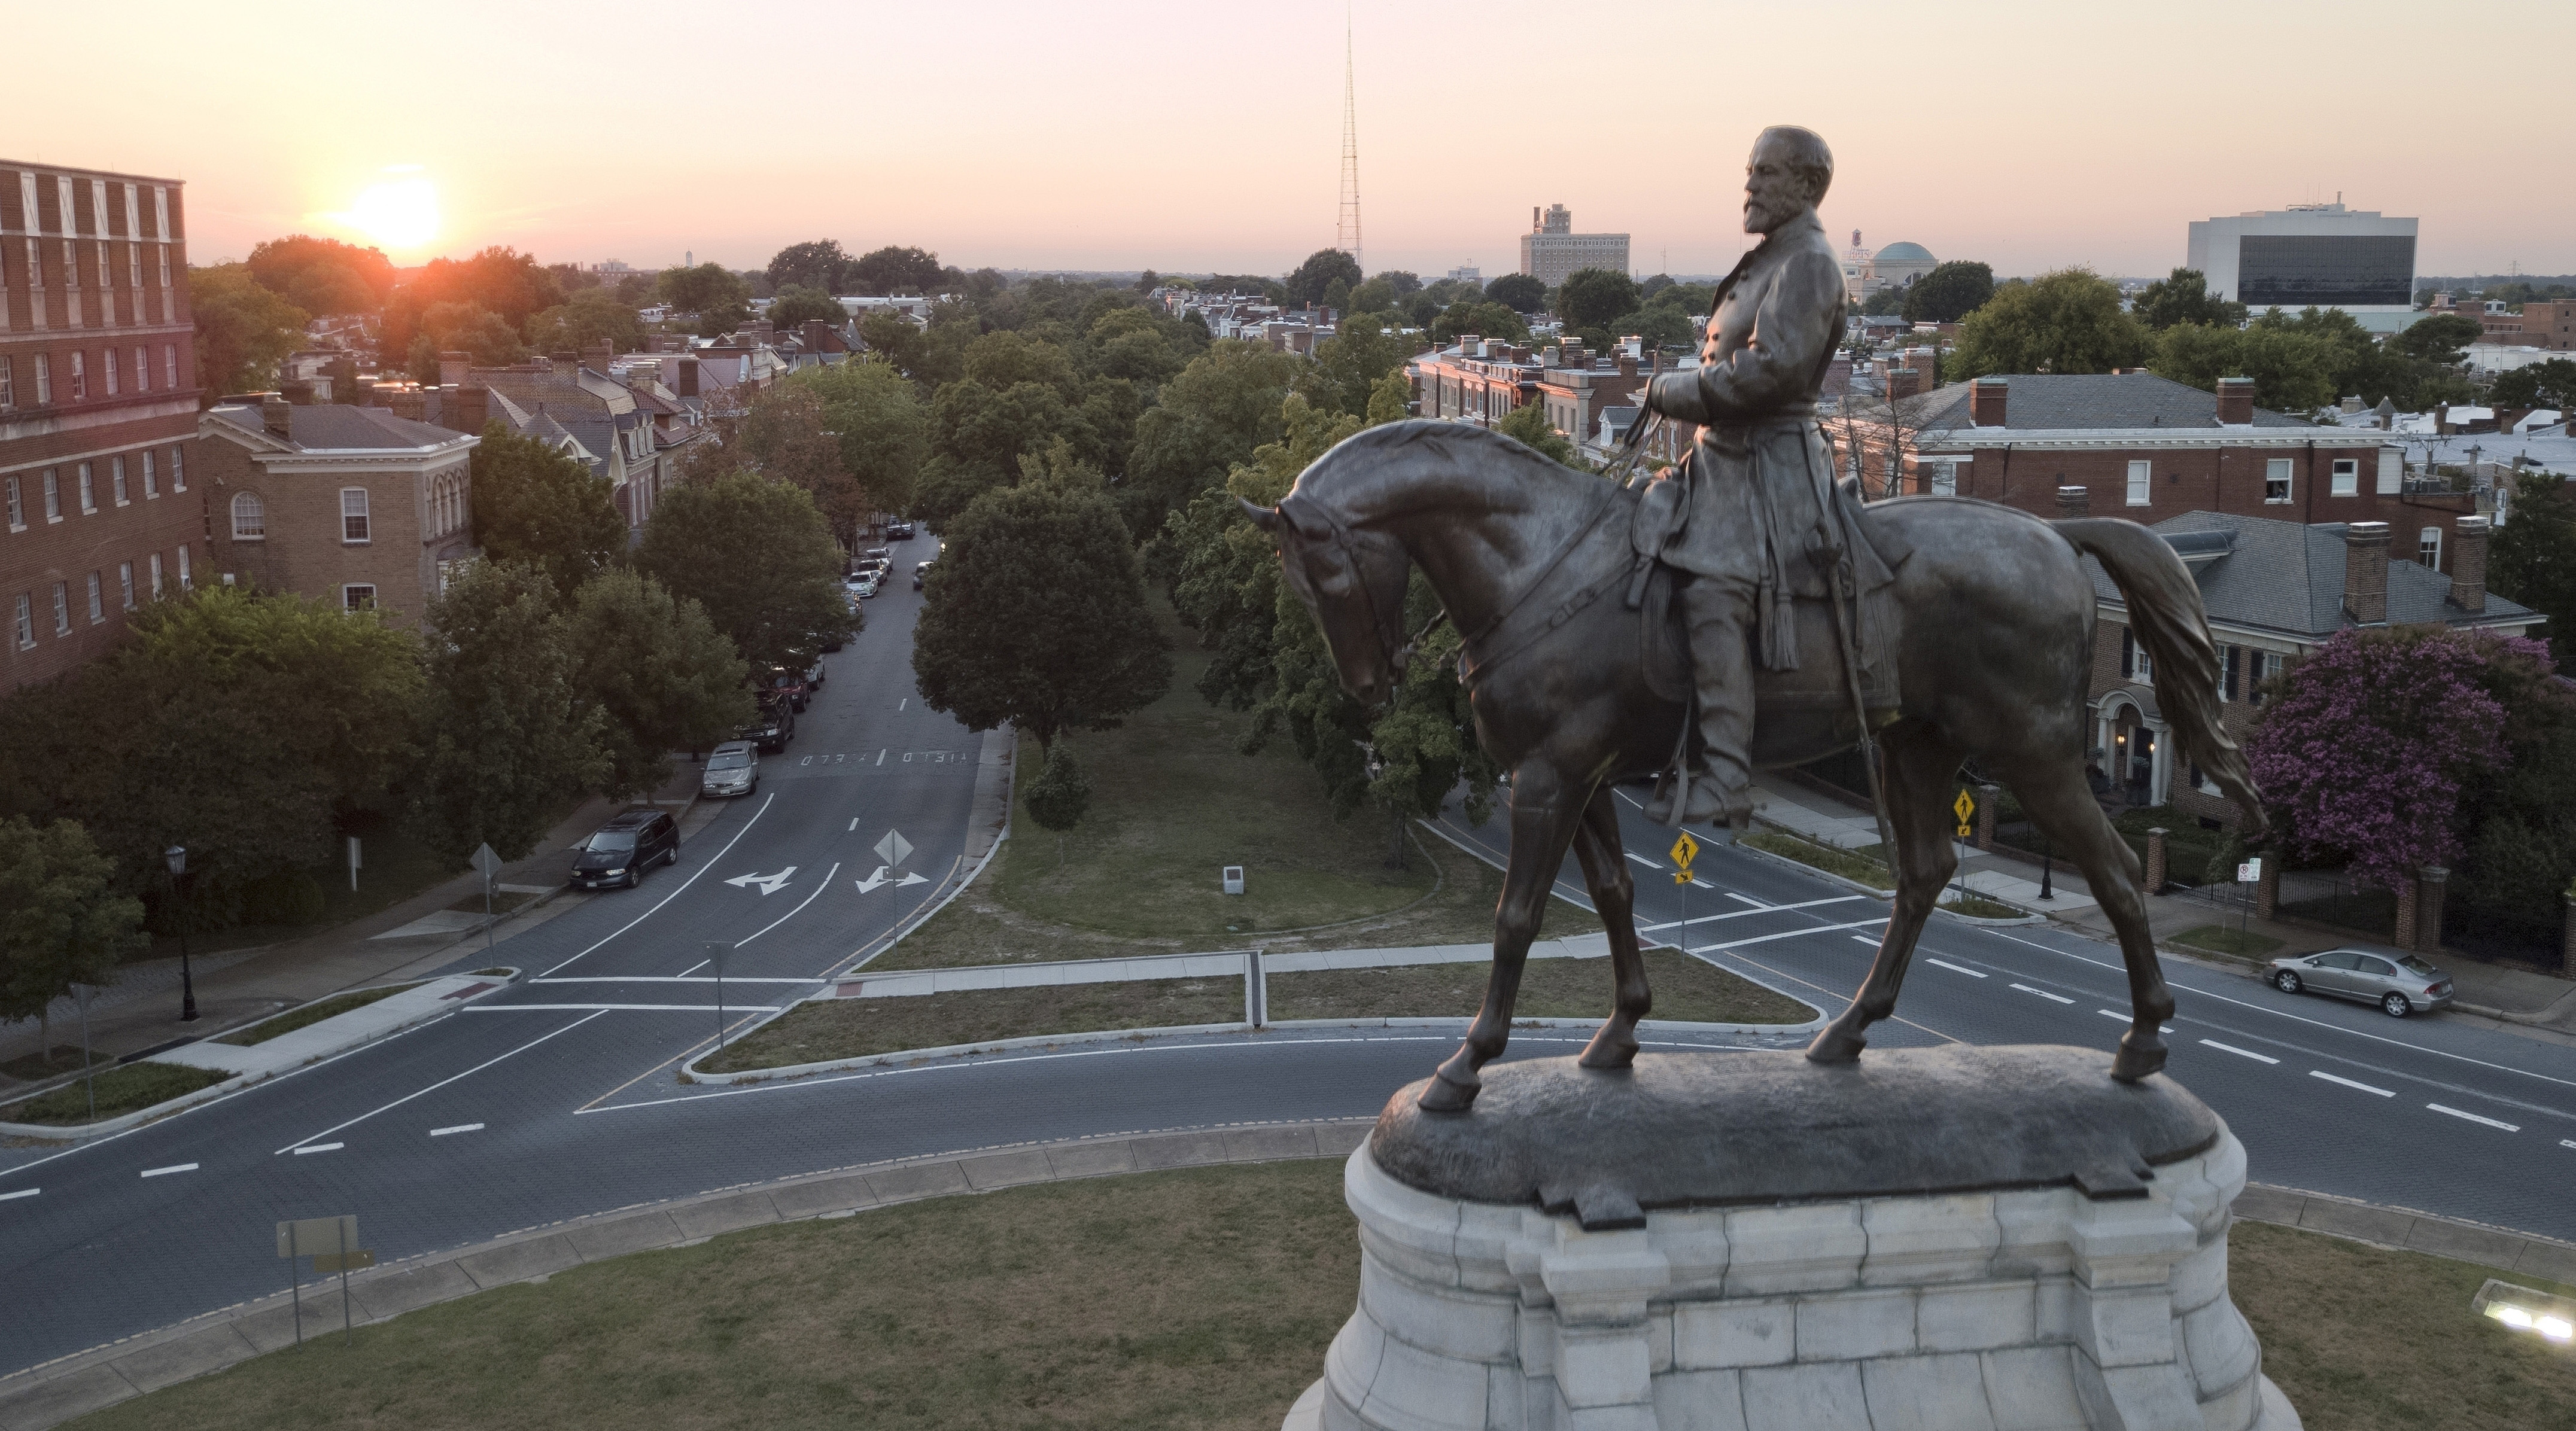 Confederate Monuments Virginia